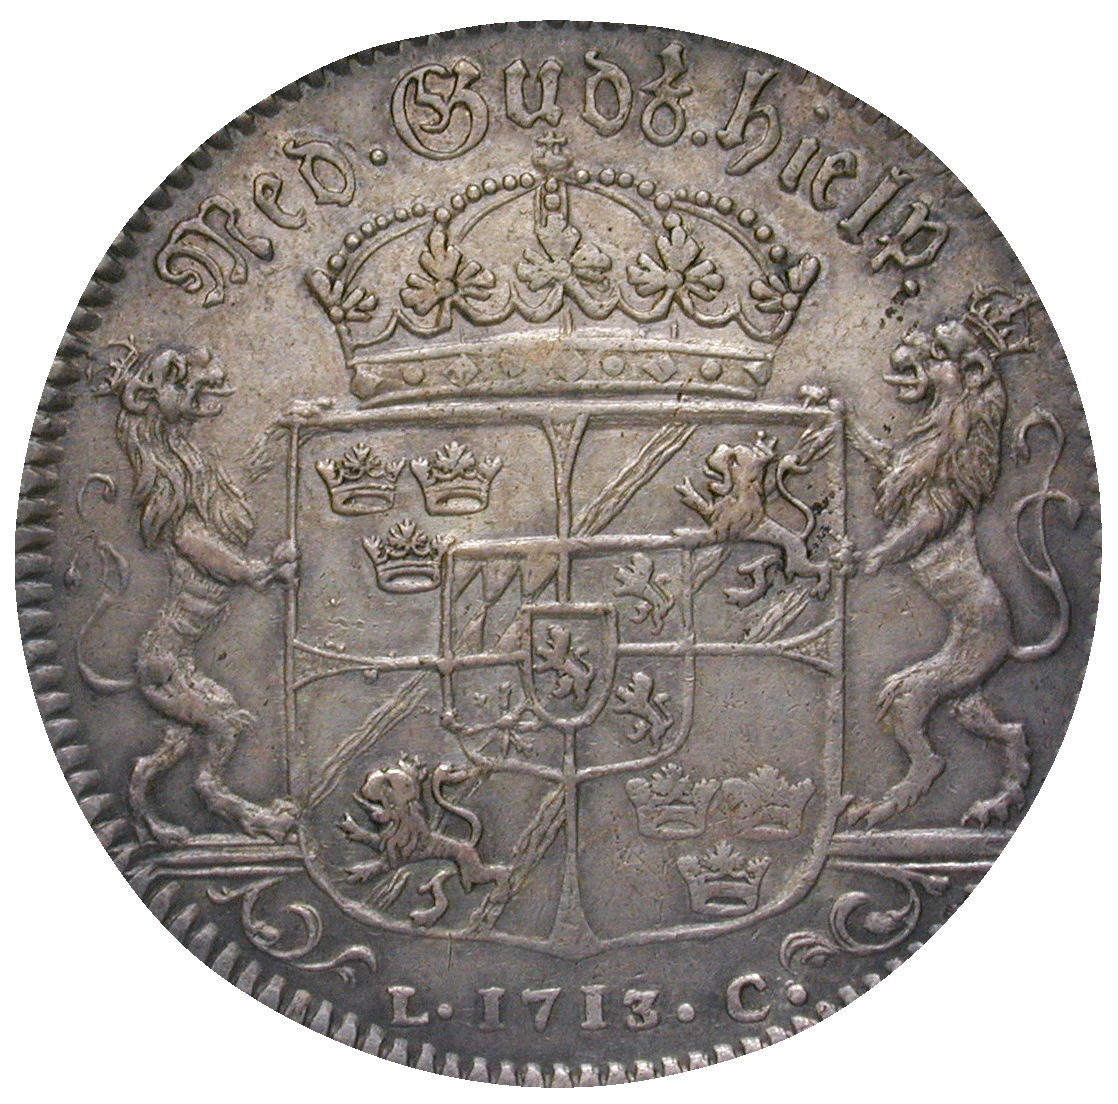 Königreich Schweden, Karl XII., Riksdaler 1713 (reverse)